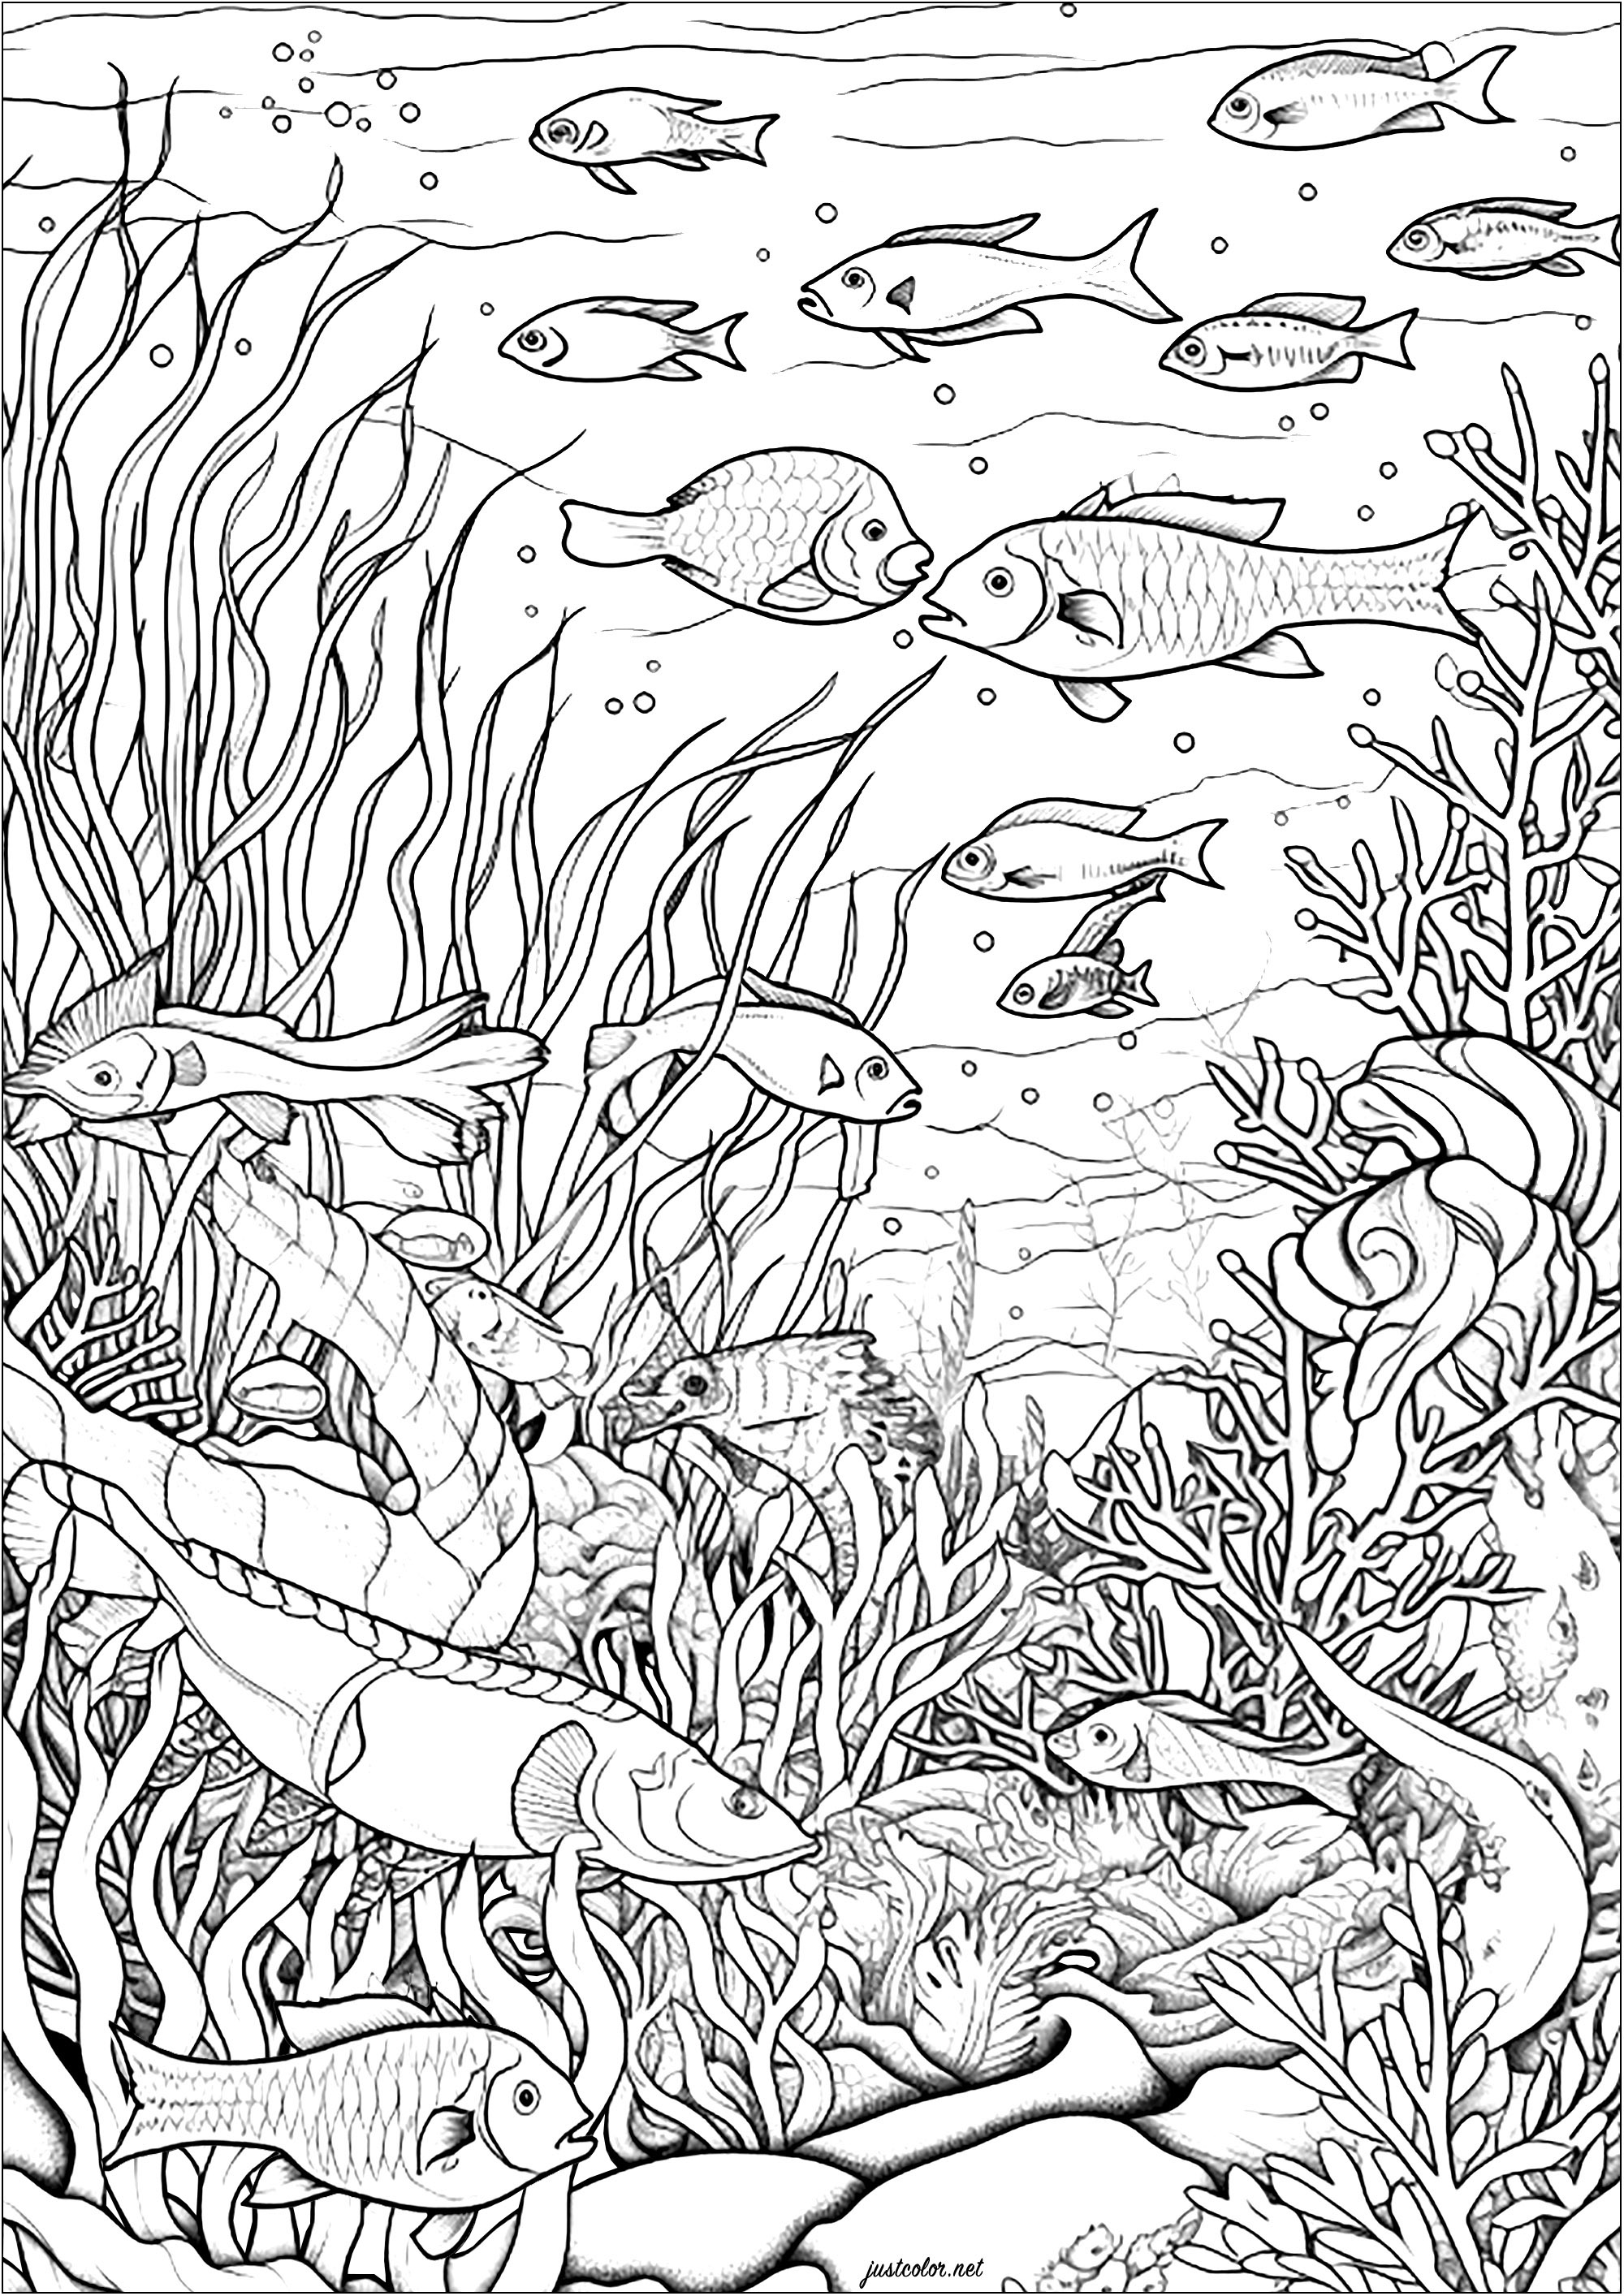 Pesce e alghe. Questa pagina da colorare è un meraviglioso dipinto acquatico.
Rappresenta una scena sottomarina serena e rilassante.
Si possono vedere molti pesci che nuotano in un fondale marino pieno di alghe.